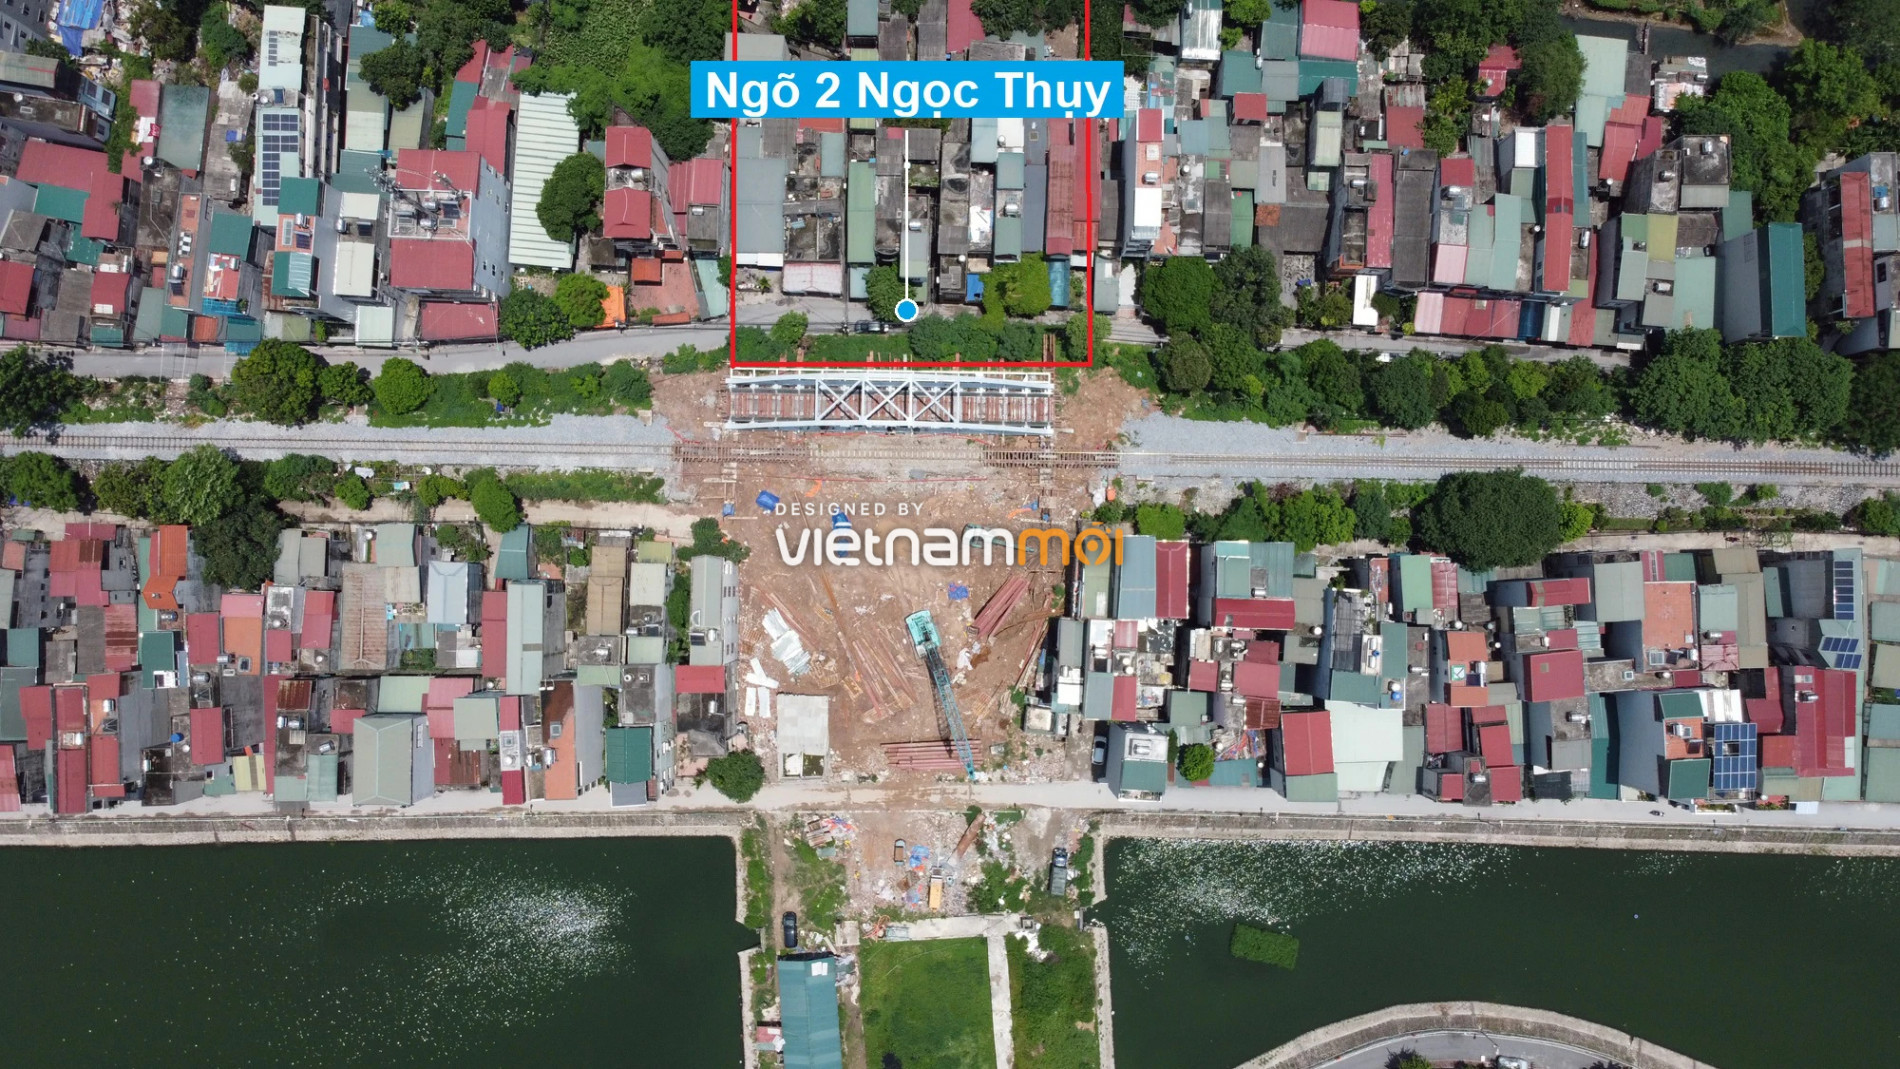 Những khu đất sắp thu hồi để mở đường ở phường Ngọc Thụy, Long Biên, Hà Nội (phần 4) - Ảnh 4.